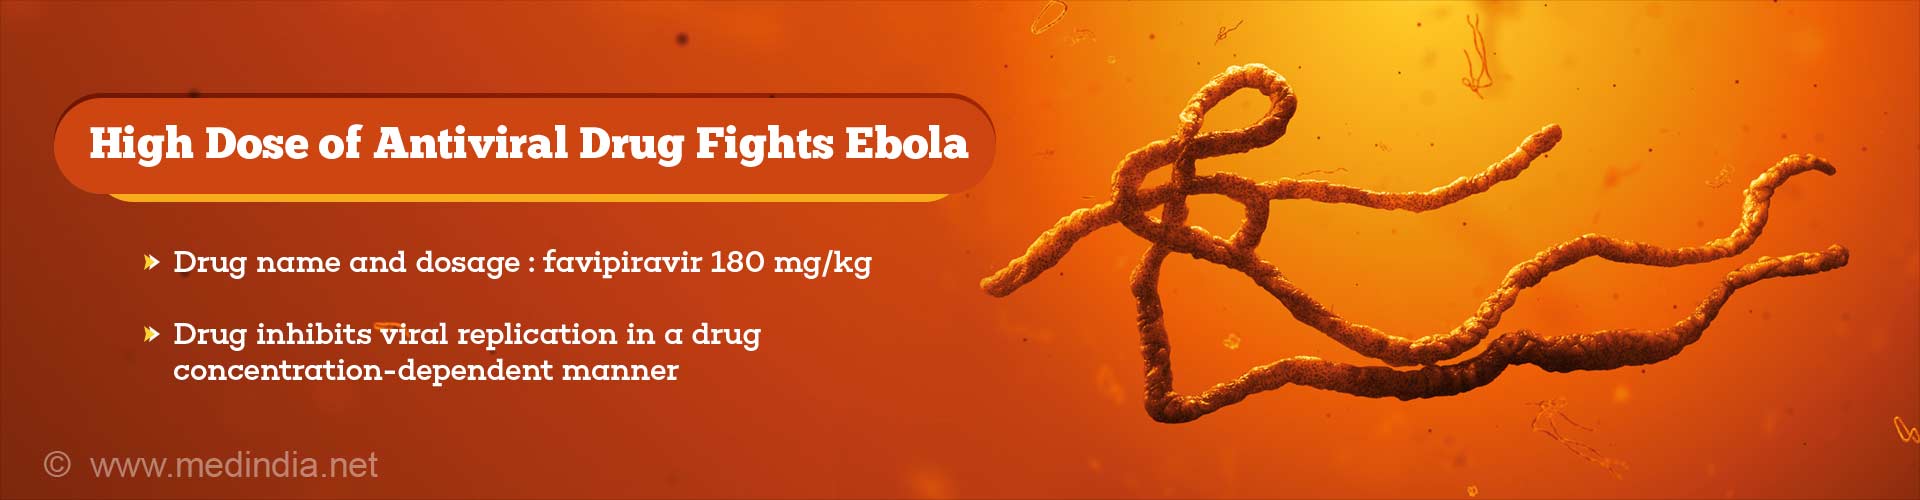 High dose of antiviral drug fights ebola
- drug name and dosage: favipiravir 180 mg/kg
- drug inhibits viral replication in a drug concentration-dependent manner